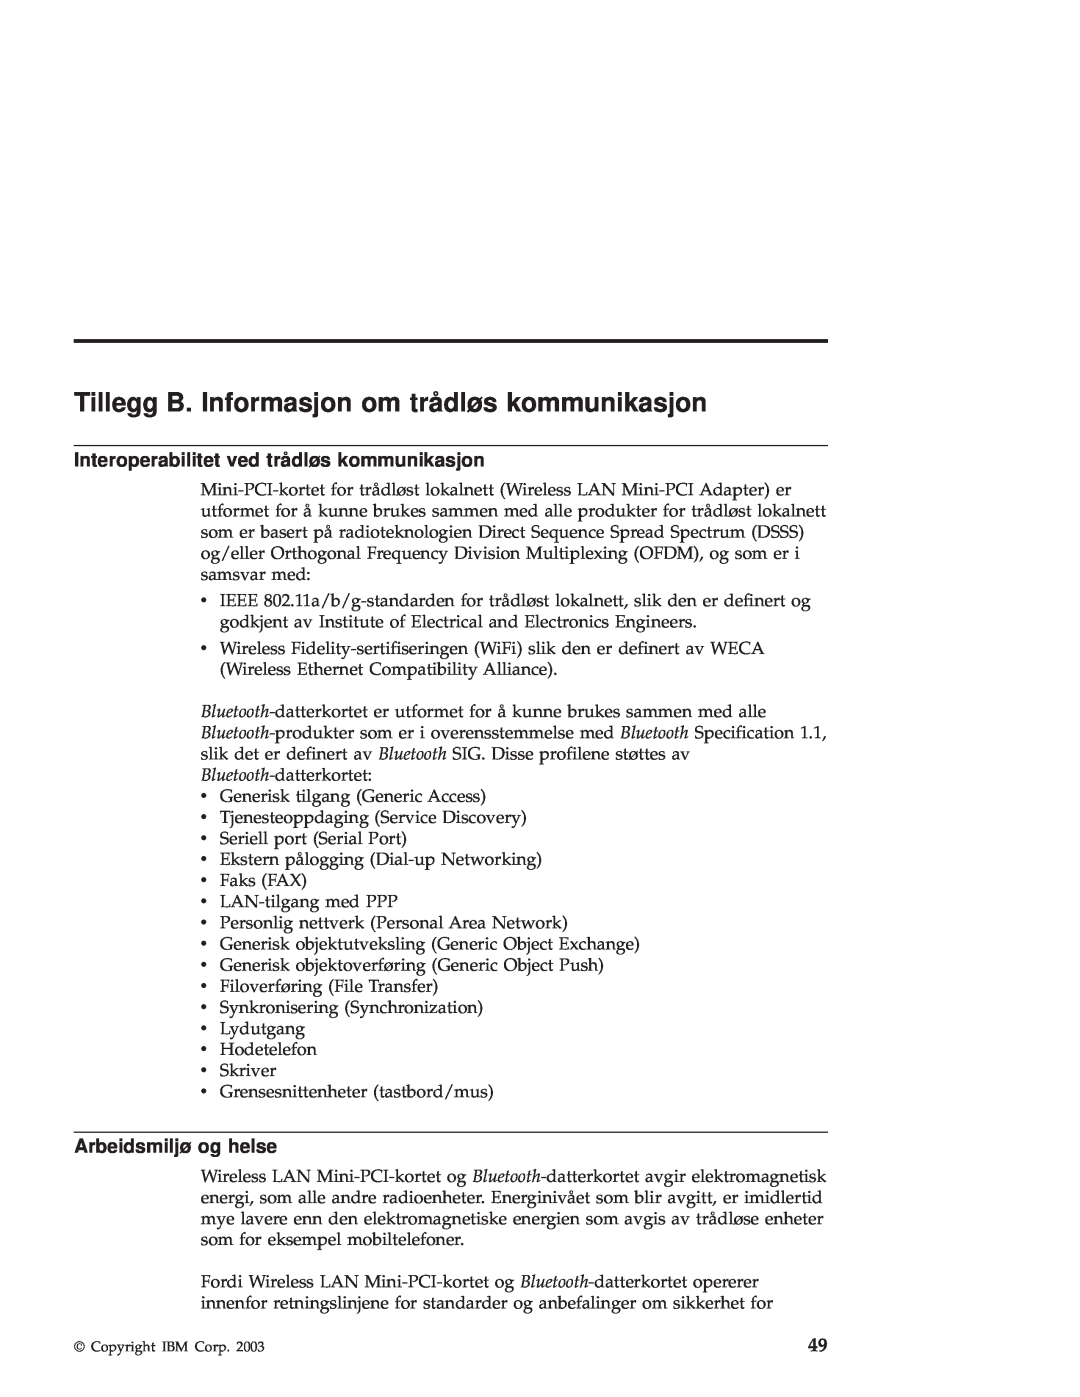 IBM R50 manual Tillegg B. Informasjon om trådløs kommunikasjon, Interoperabilitet ved trådløs kommunikasjon 